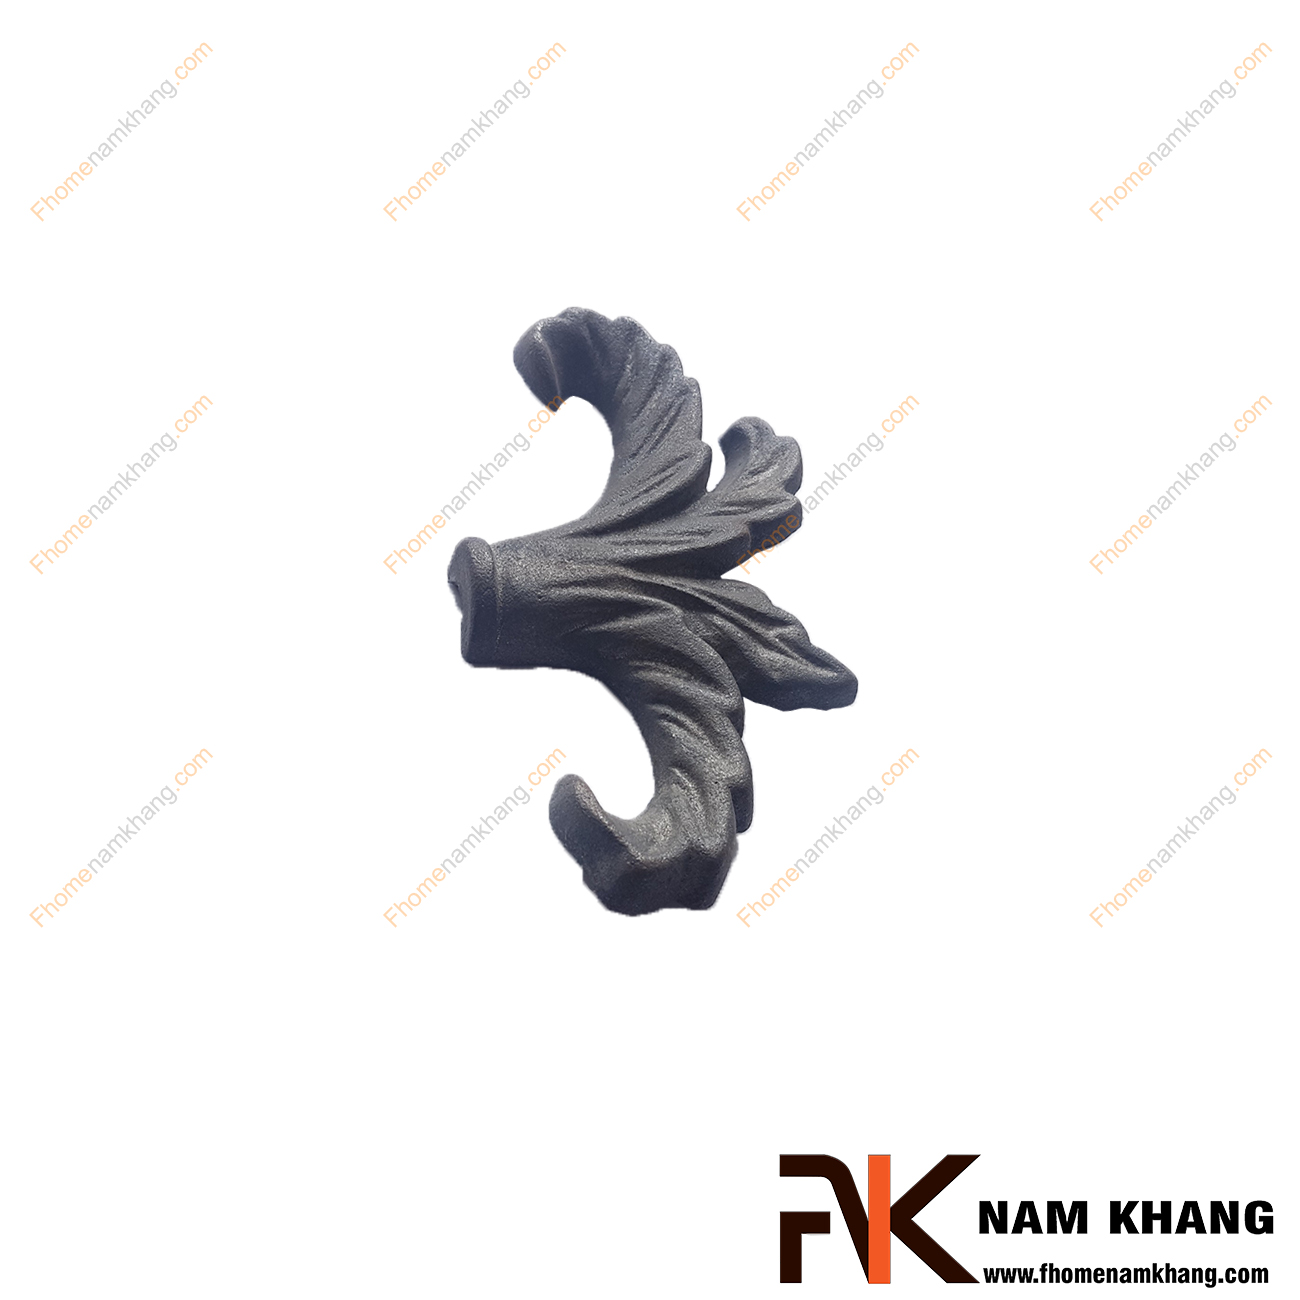 Phụ kiện gang đúc mỹ thuật NKS-99P được tạo hình nụ lá chuyên dùng để trang trí các sản phẩm sắt uốn mỹ thuật   Chi tiết được sử dụng để nối các hàn, lắp ghép và trang trí.